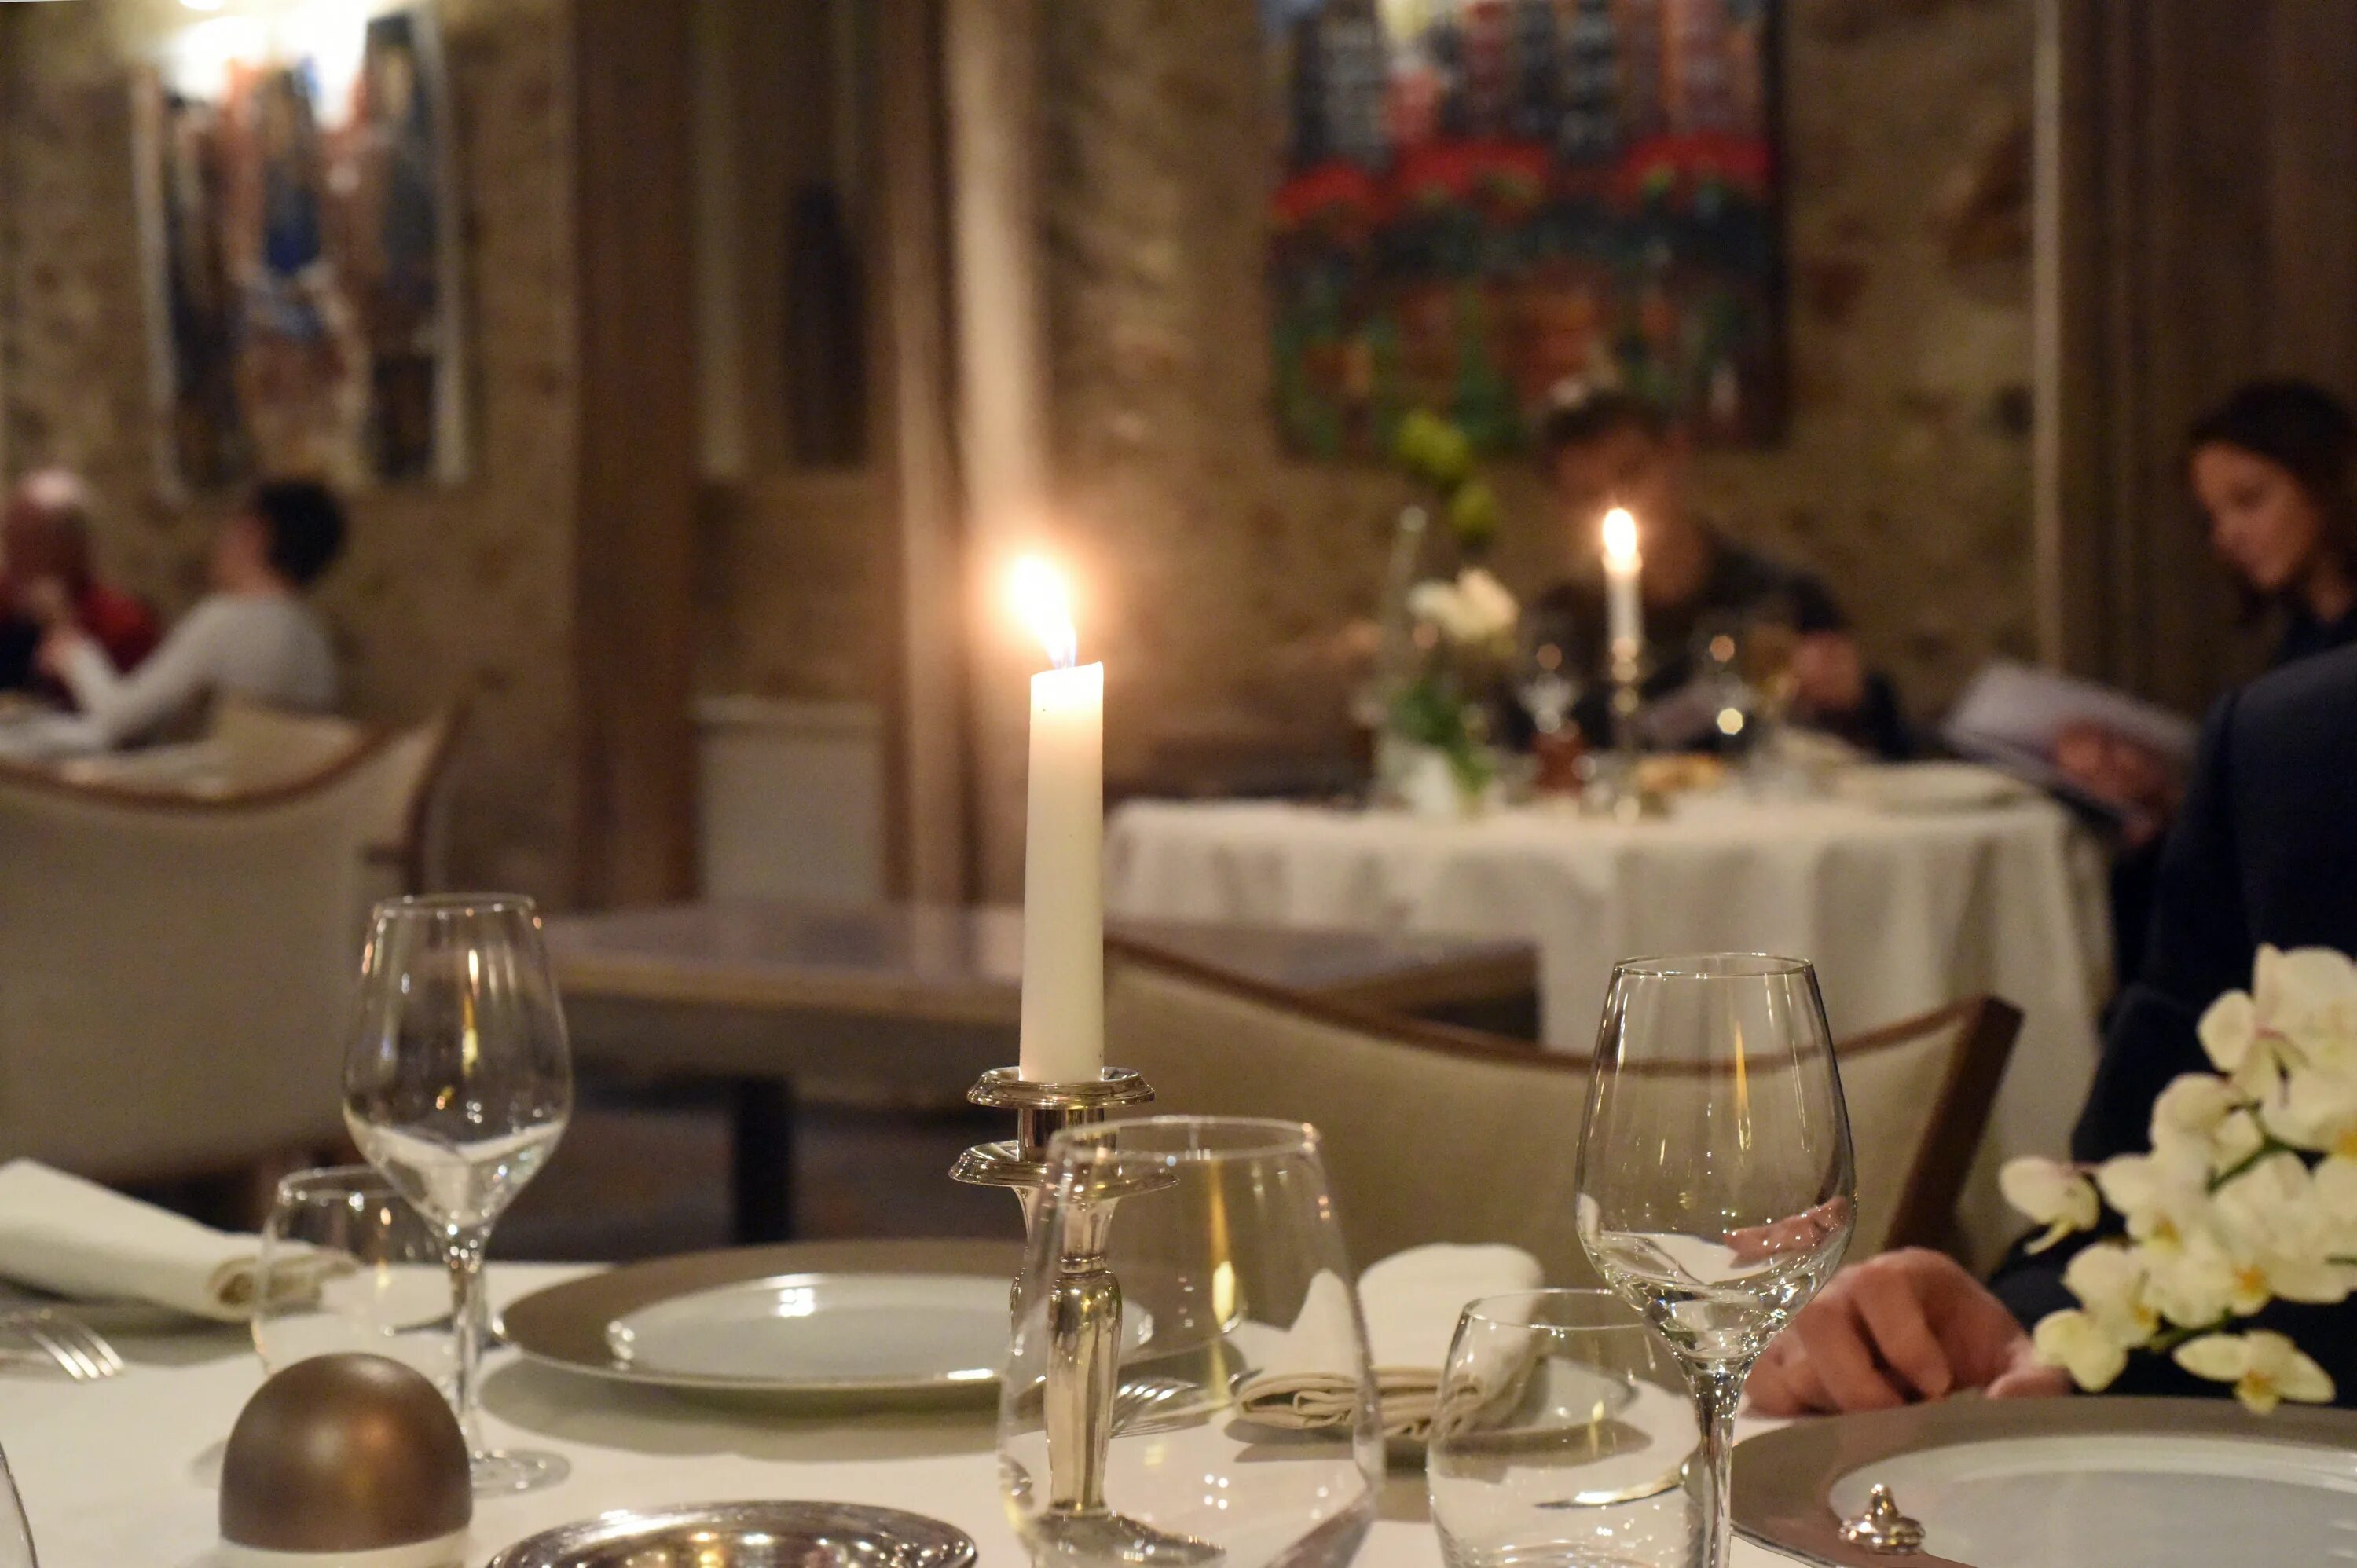 Глав ужин. Столик в ресторане. Сервировка стола в ресторане. Романтический ужин в ресторане. Свечи в ресторане.